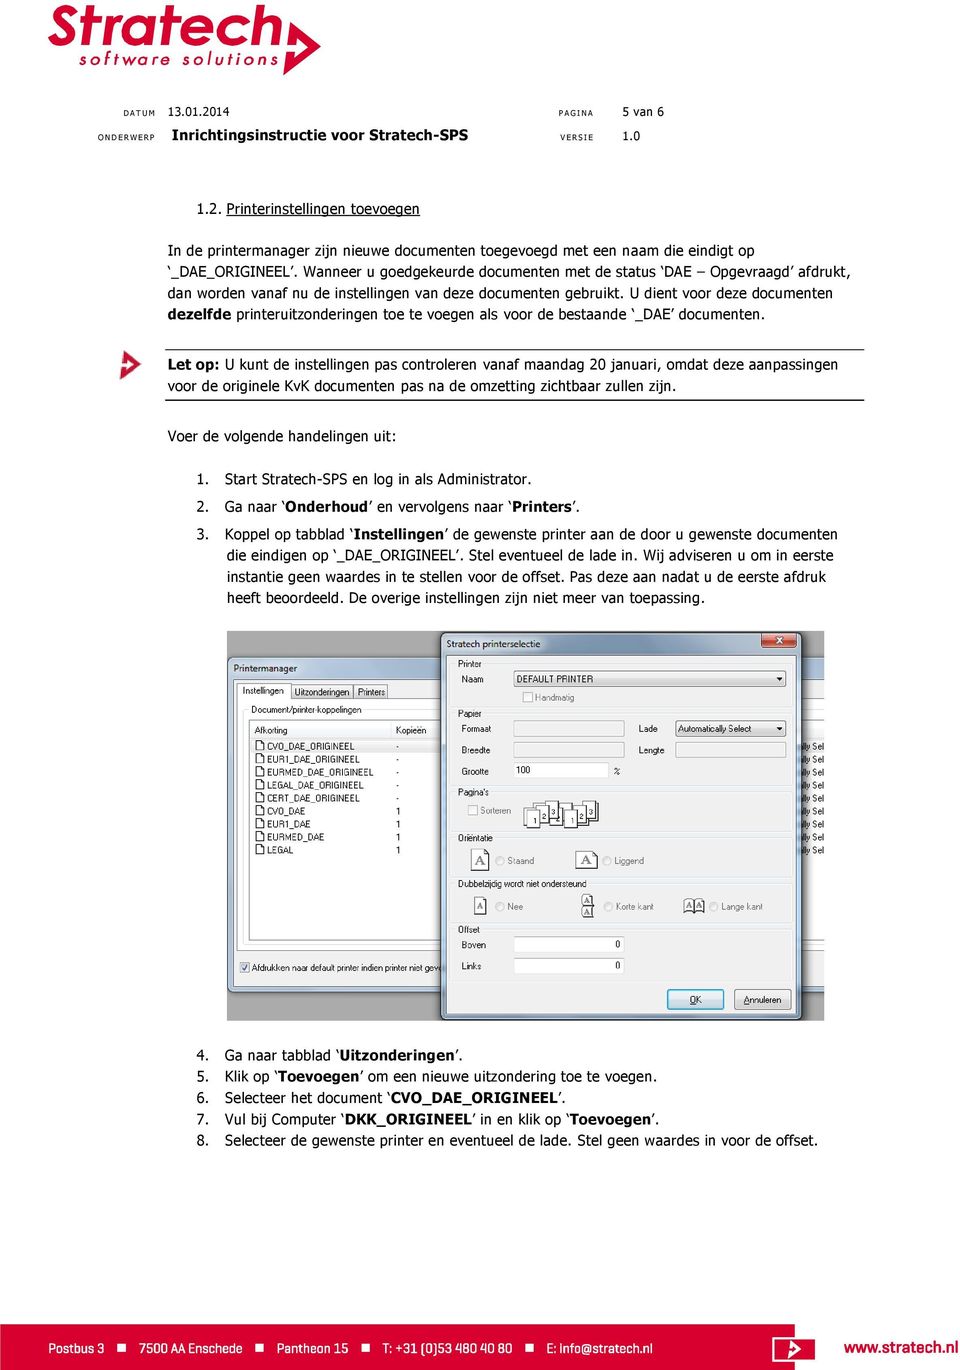 U dient voor deze documenten dezelfde printeruitzonderingen toe te voegen als voor de bestaande _DAE documenten.